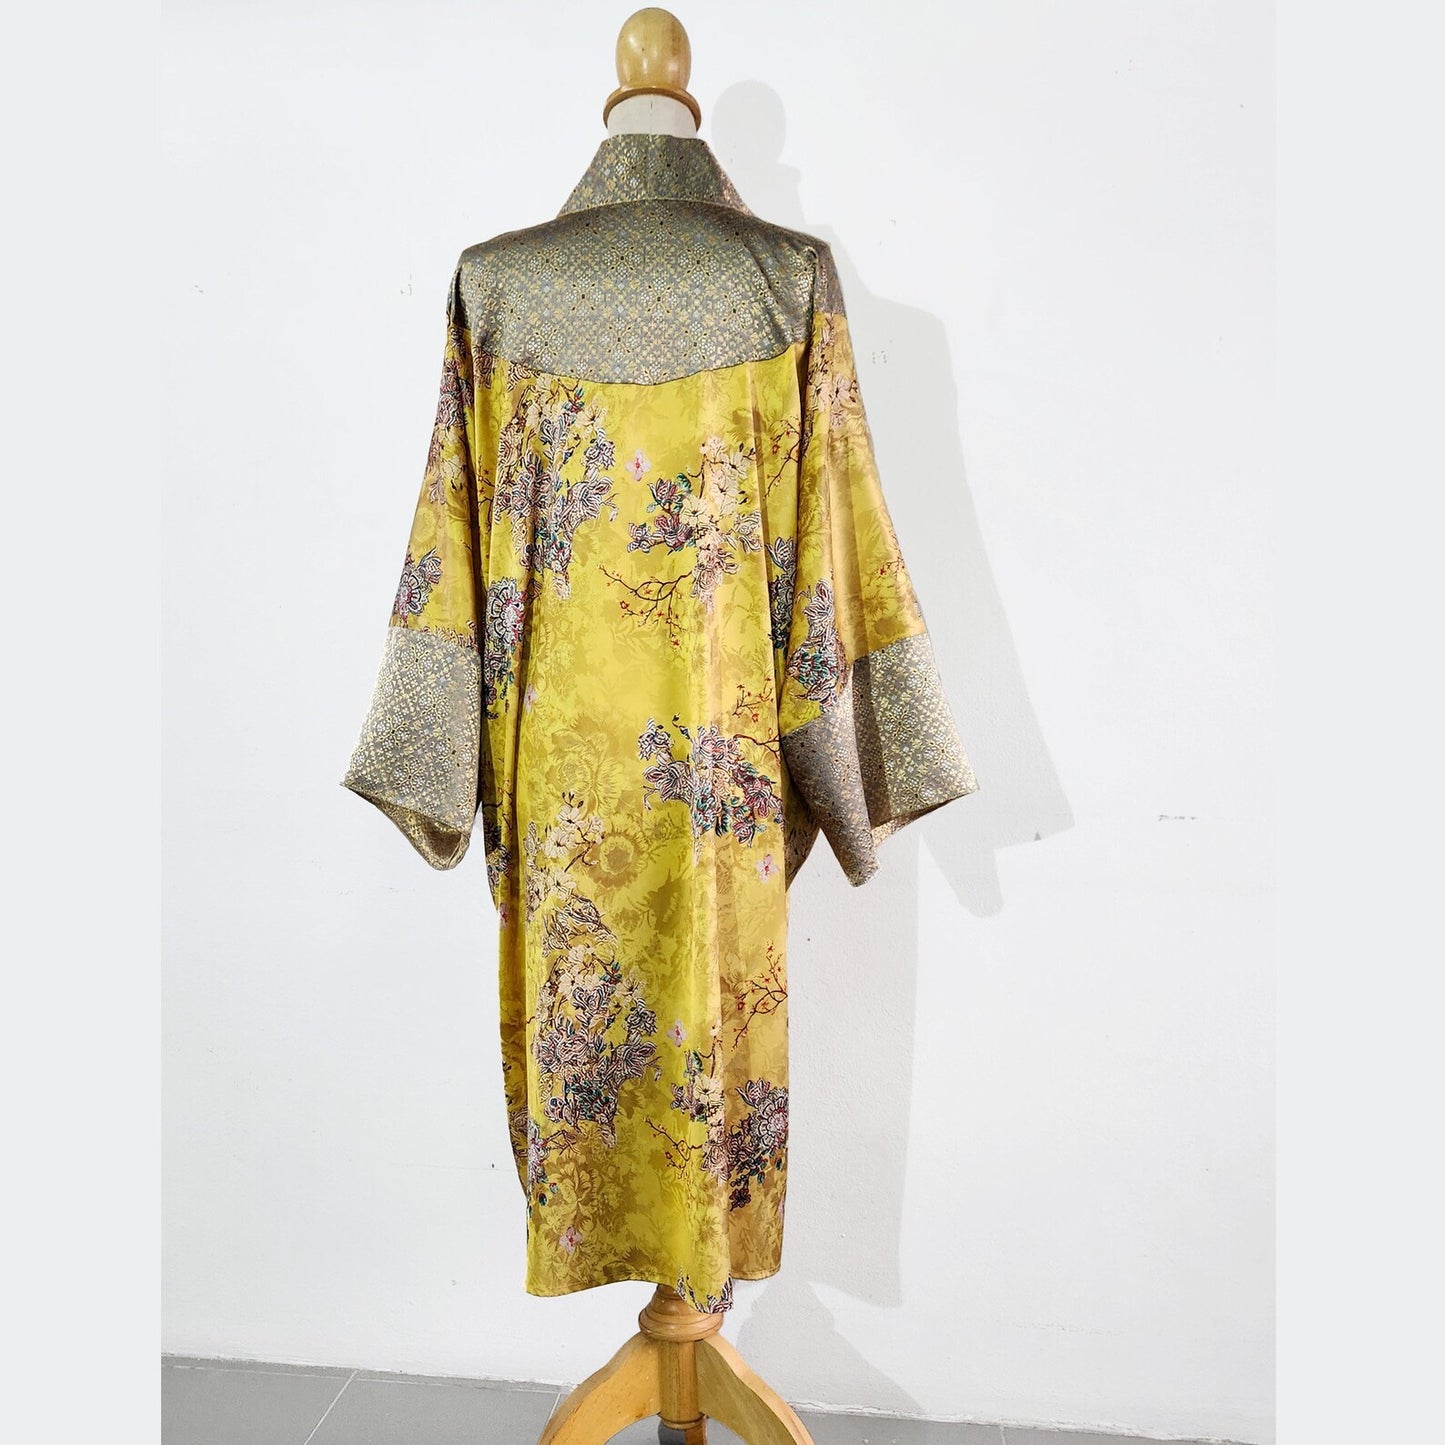 1920s loungewear inspired kimono robe in printed yellow satin